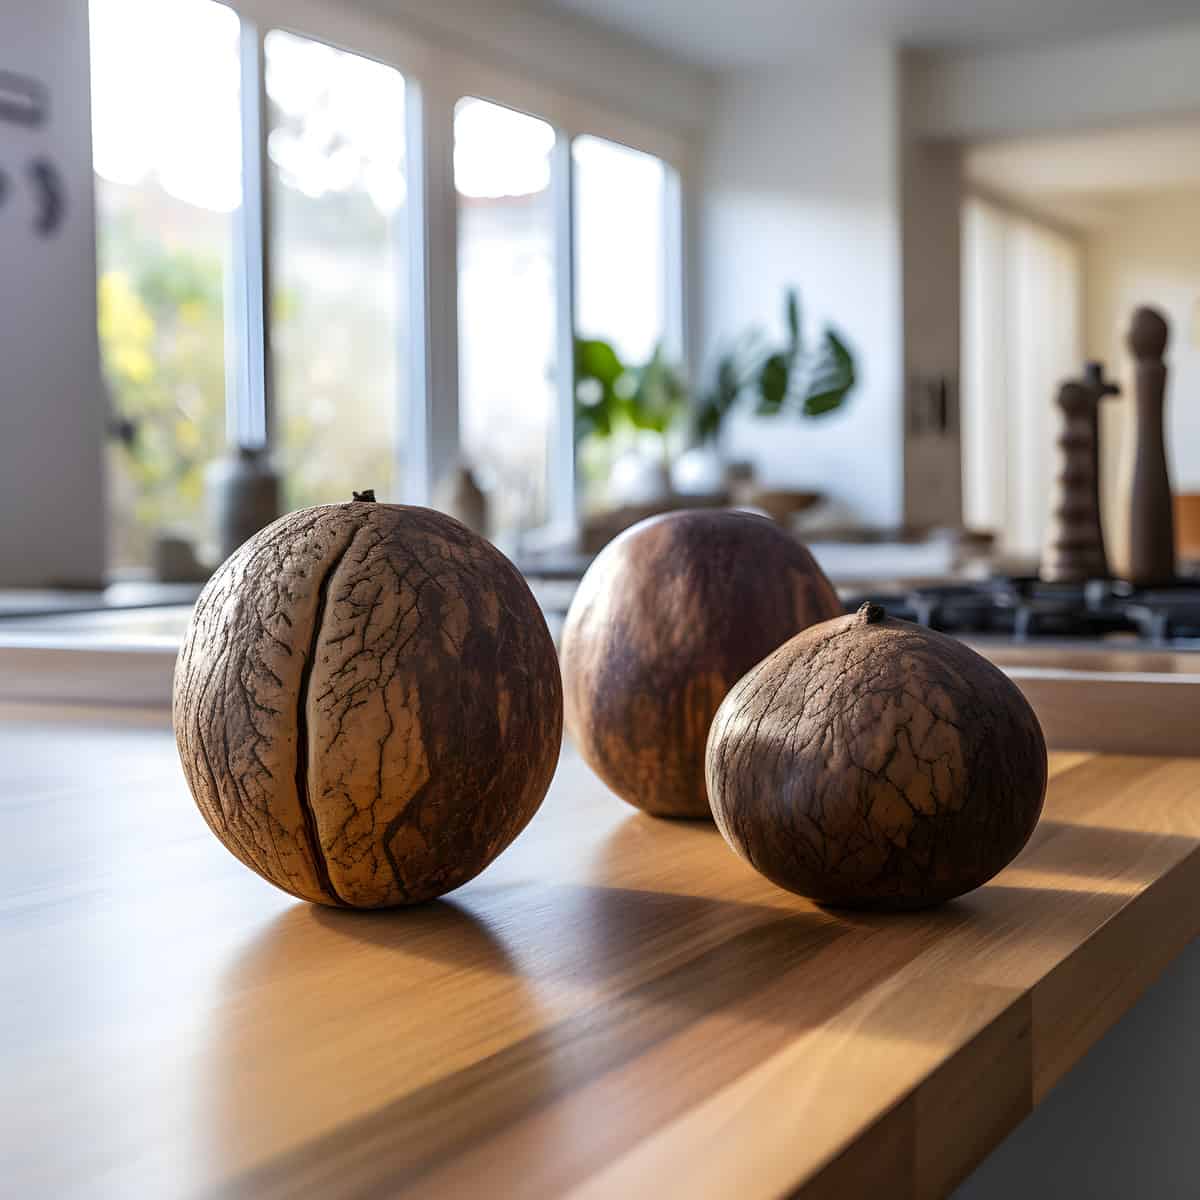 Woodapple on a kitchen counter